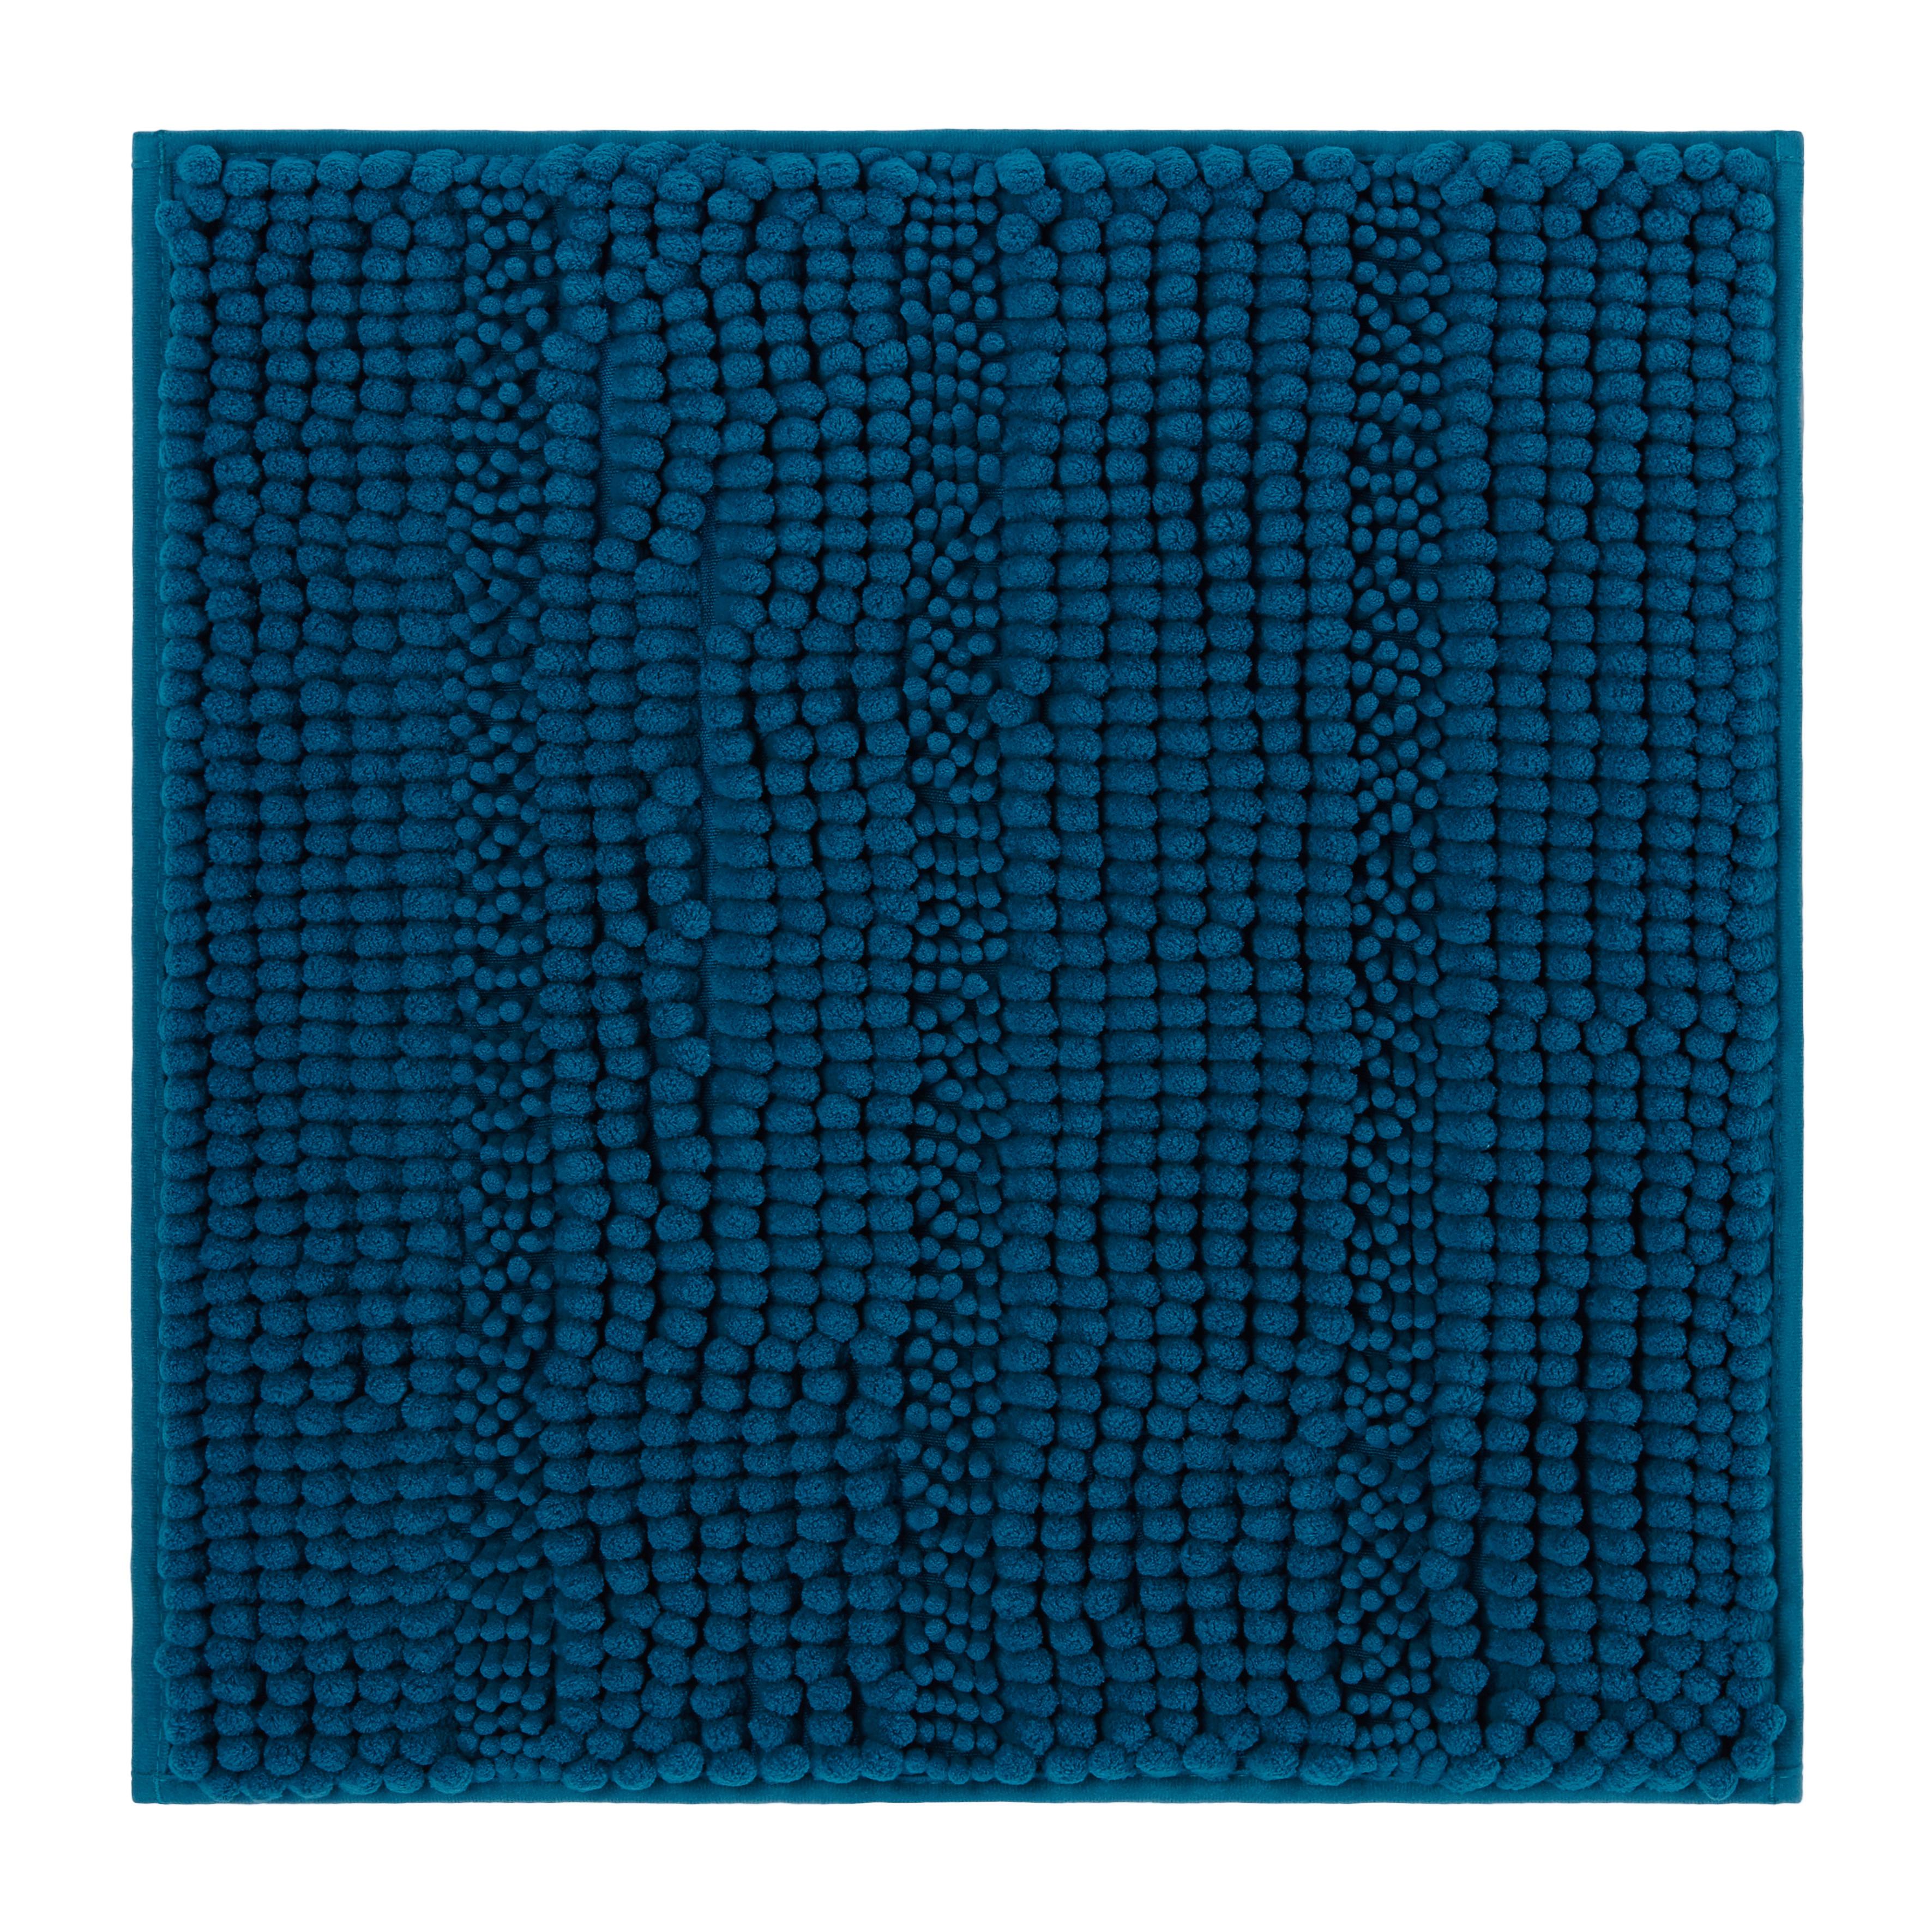 Fürdőszobaszőnyeg Uwe 50/50cm - Olajkék, Textil (50/50cm) - Modern Living